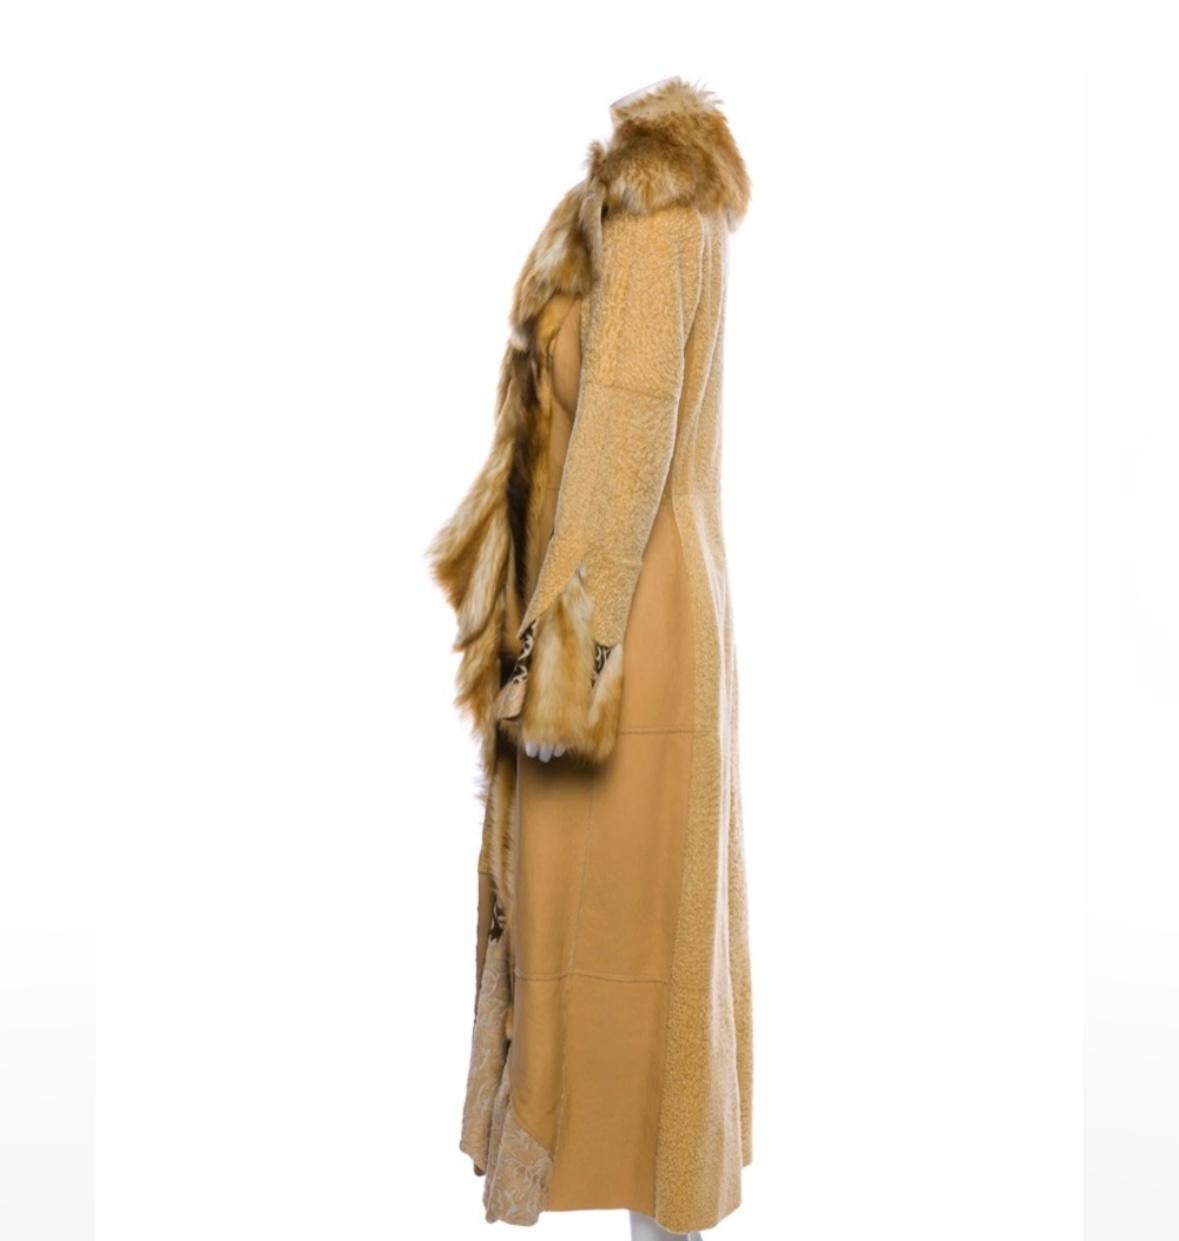 Artico Italienischer Luxusmantel aus Shearling und Leder in voller Länge 
Wahrlich ein Meisterwerk! 
Das ist wahrscheinlich der schönste Mantel, den ich je gesehen habe. Sehr gut gemacht. Definitiv kein gewöhnliches Stück

Ursprünglich 7.000 $

Kein